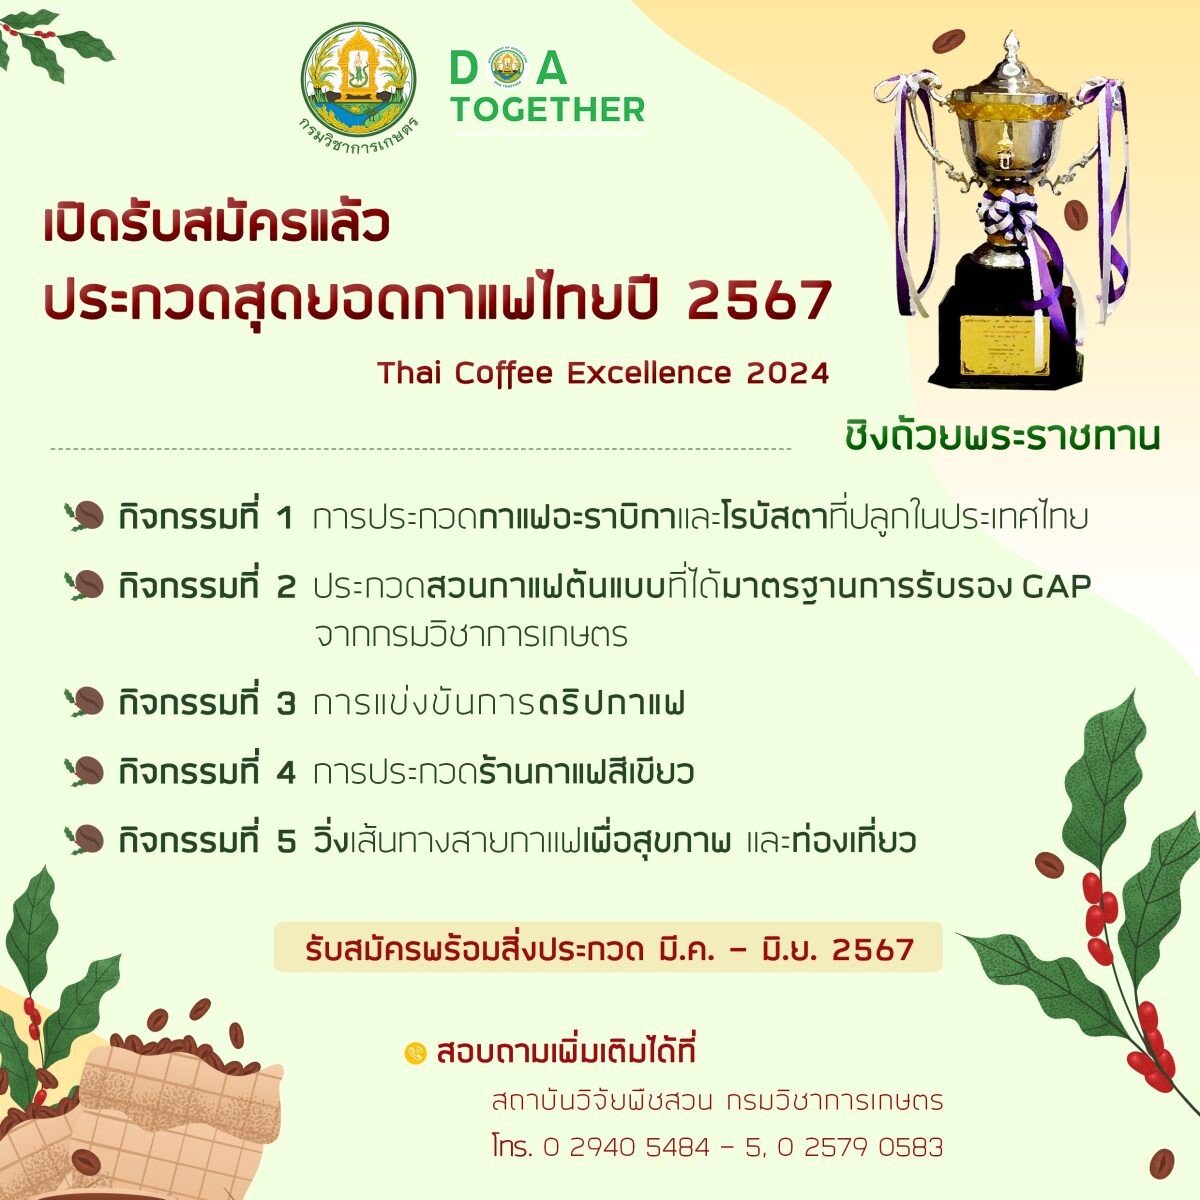 เปิดรับสมัครแล้ว! ประกวดสุดยอดกาแฟไทยปี 4 ชิงถ้วยรางวัลพระราชทานเวทีเสริมแกร่งอัตลักษณ์กาแฟไทยดันสู่ตลาดโลก